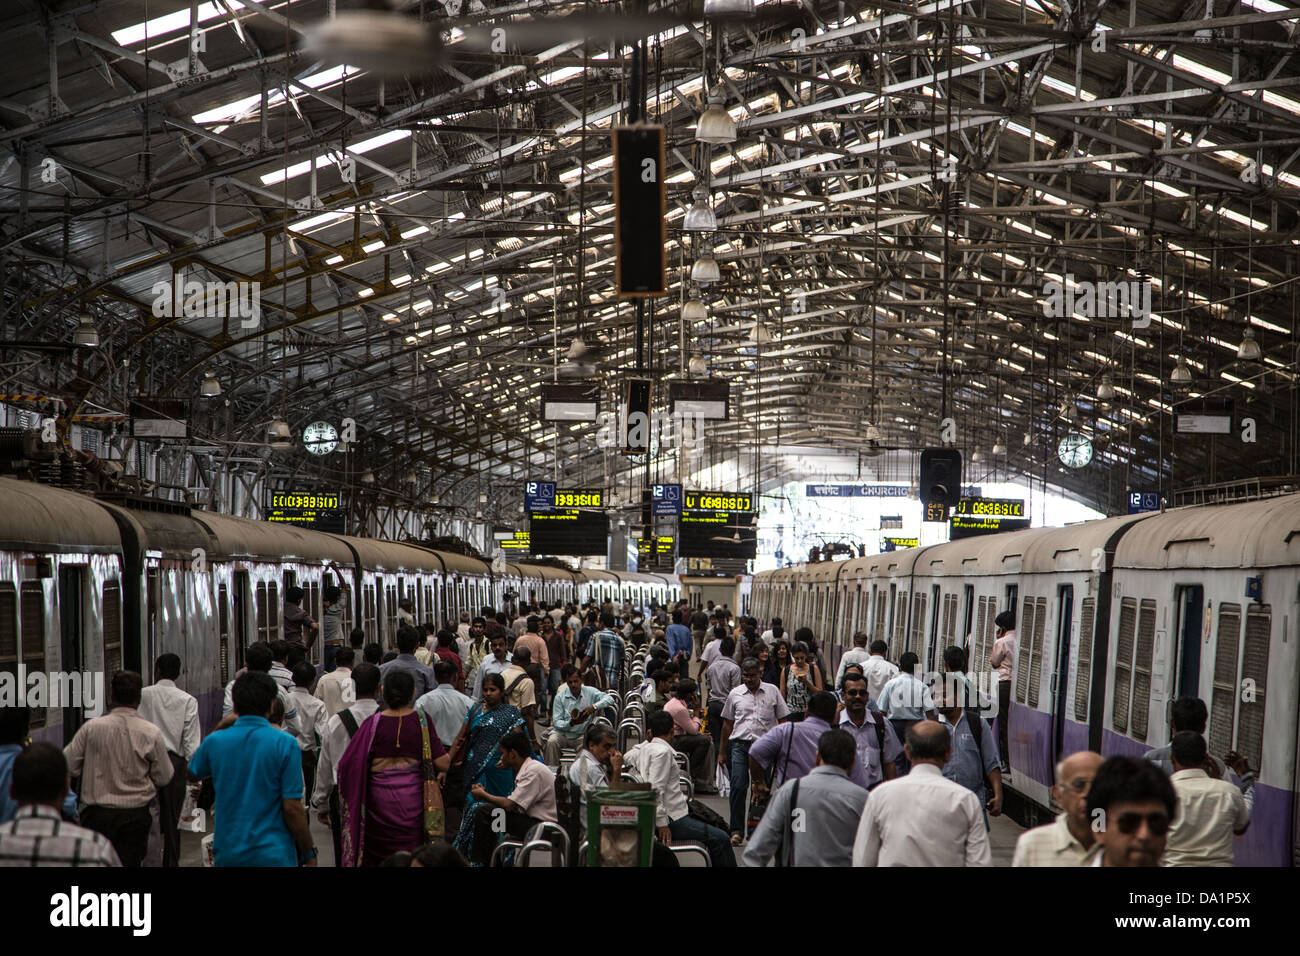 Churchgate station ferroviaire de banlieue, Mumbai, Inde Banque D'Images